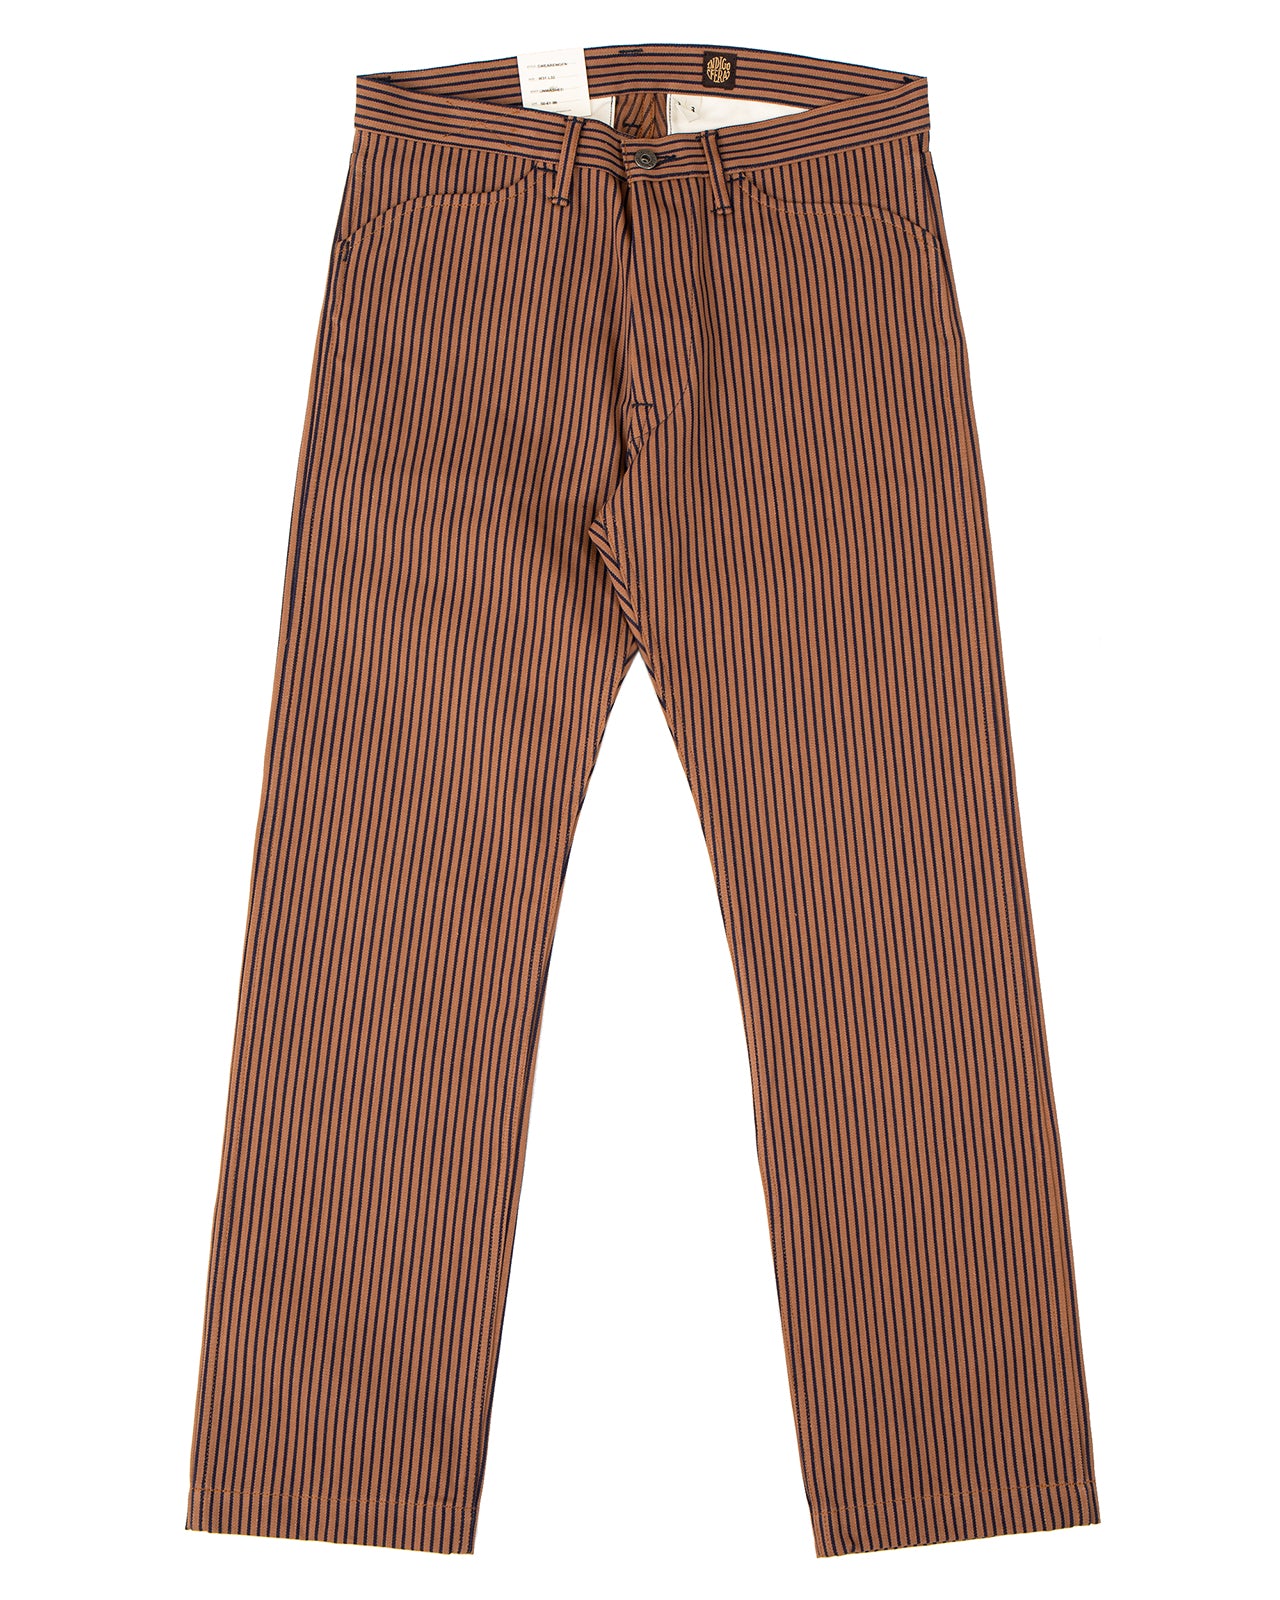 Indigofera Swearengen Pants, Groot / Indigo Stripe